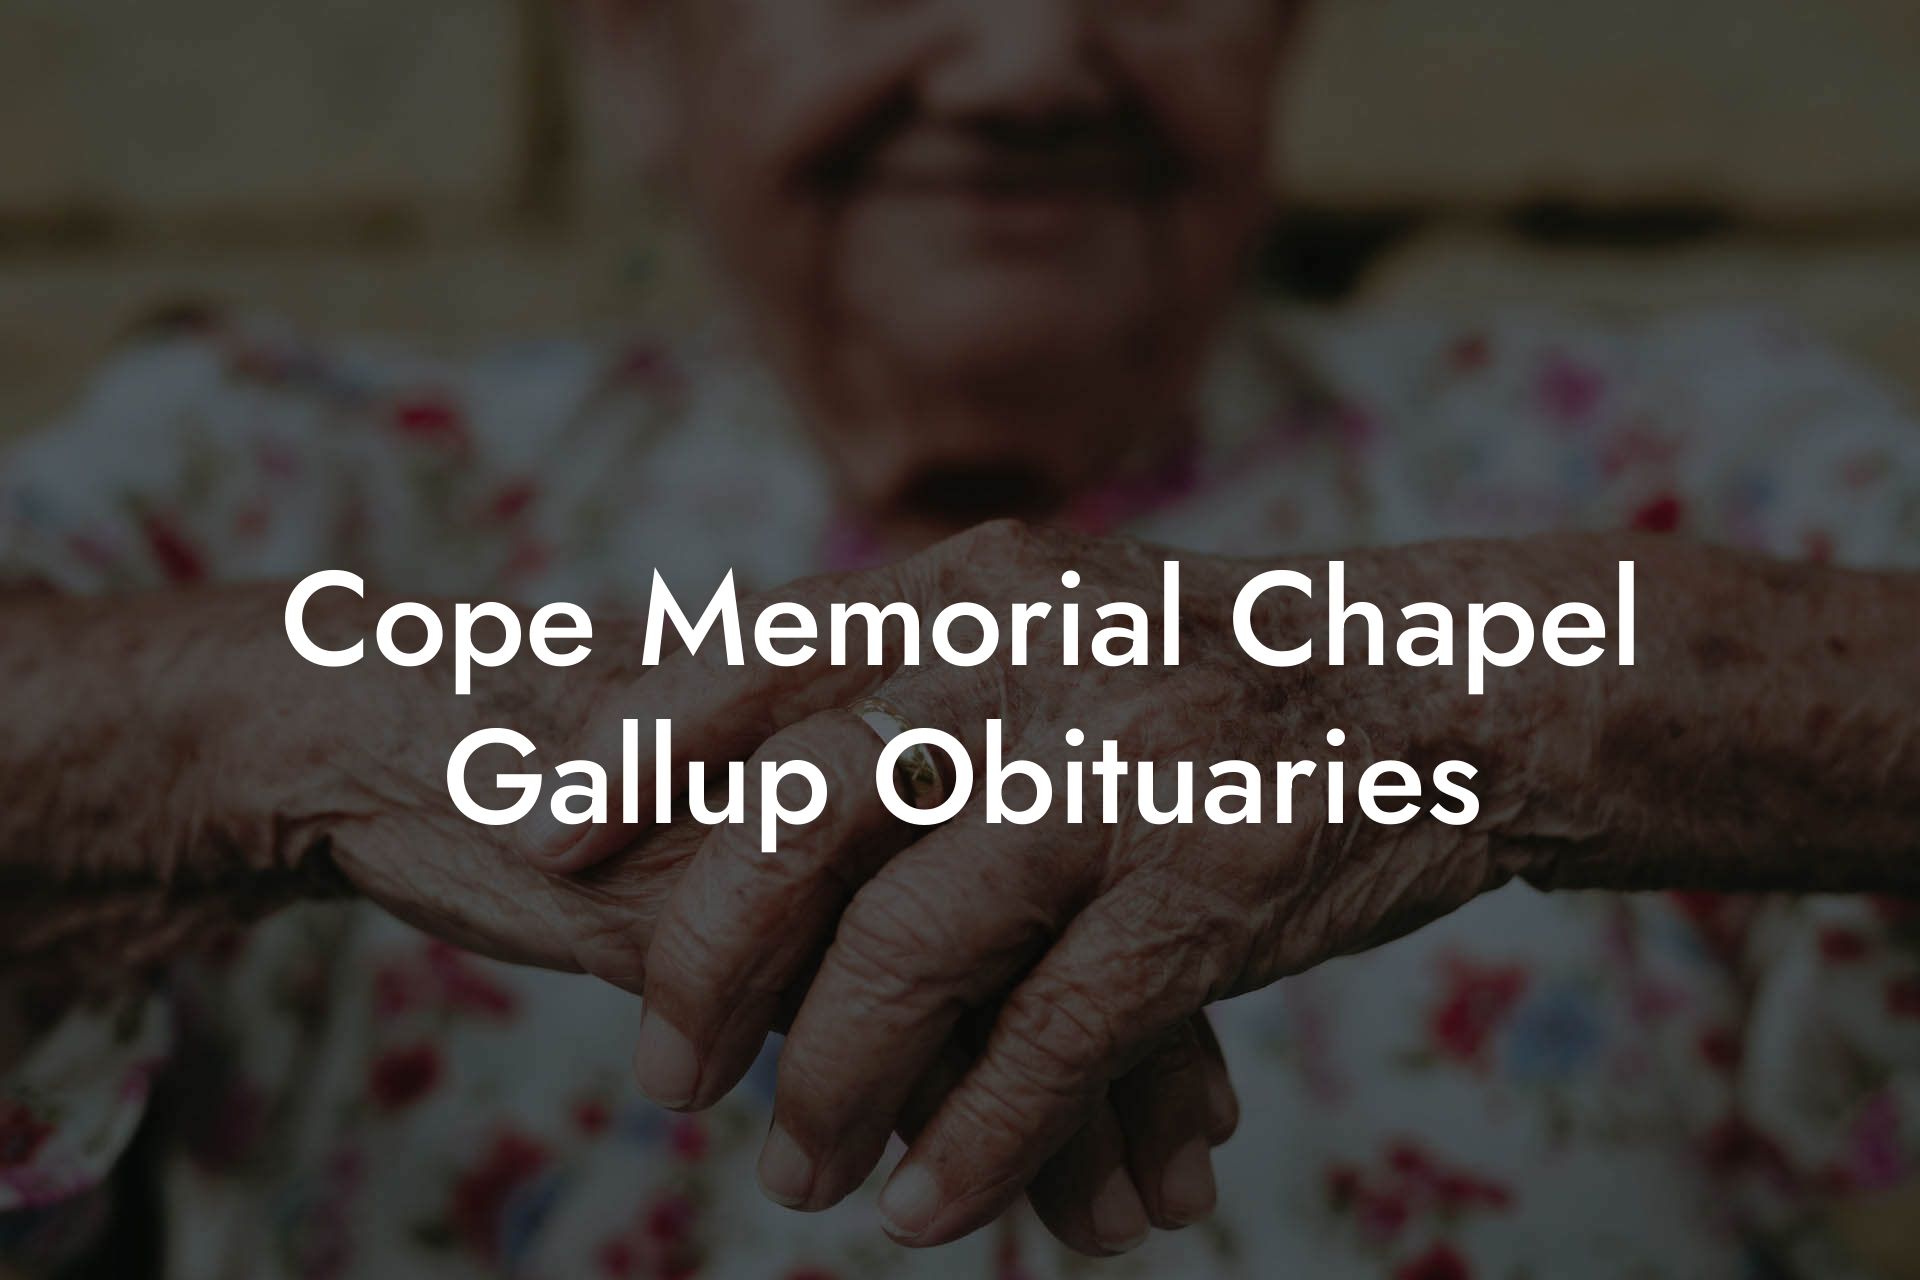 Cope Memorial Chapel Gallup Obituaries